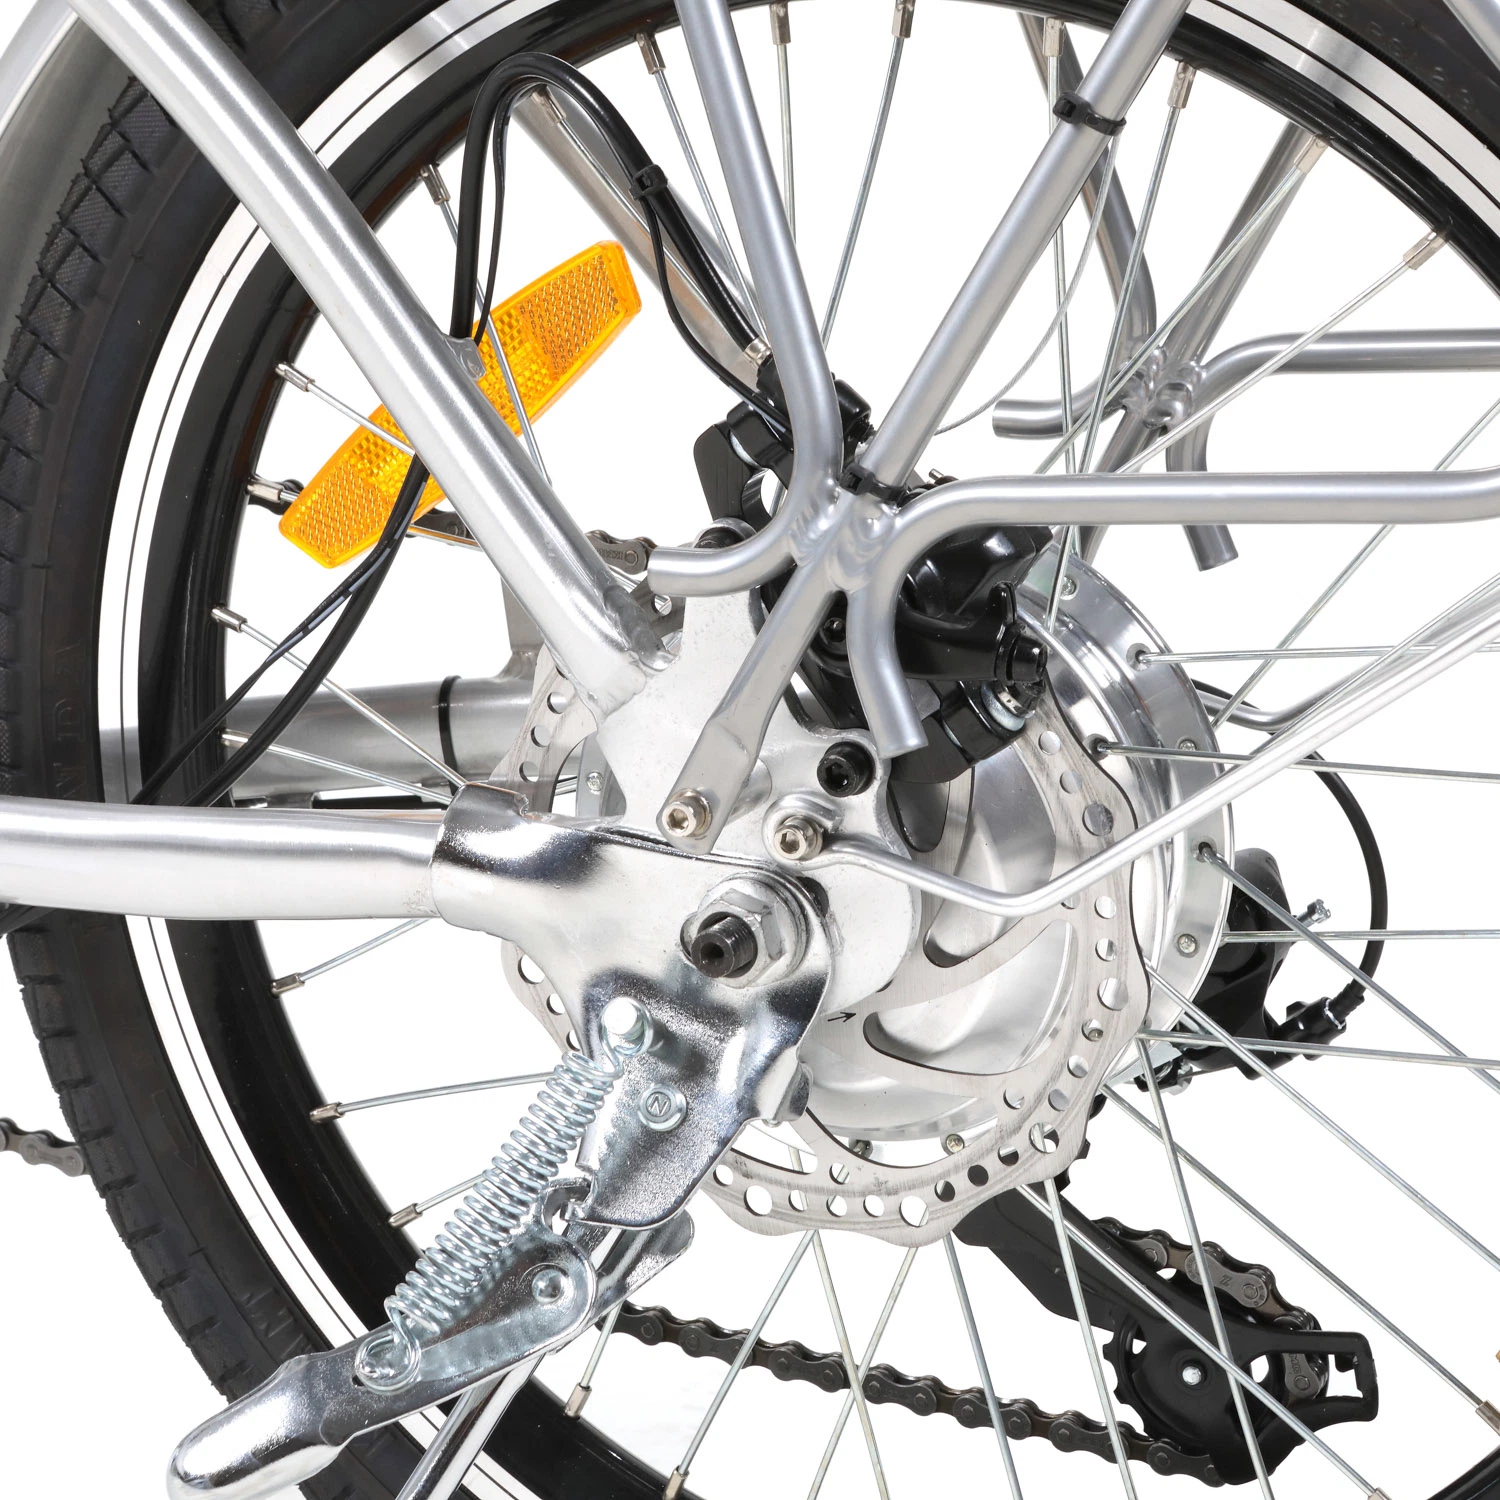 Certificação elétrica dobrável de 20 polegadas eBike CE de 250 W - barata Bicicleta Hot Pocket elétrica dobrável